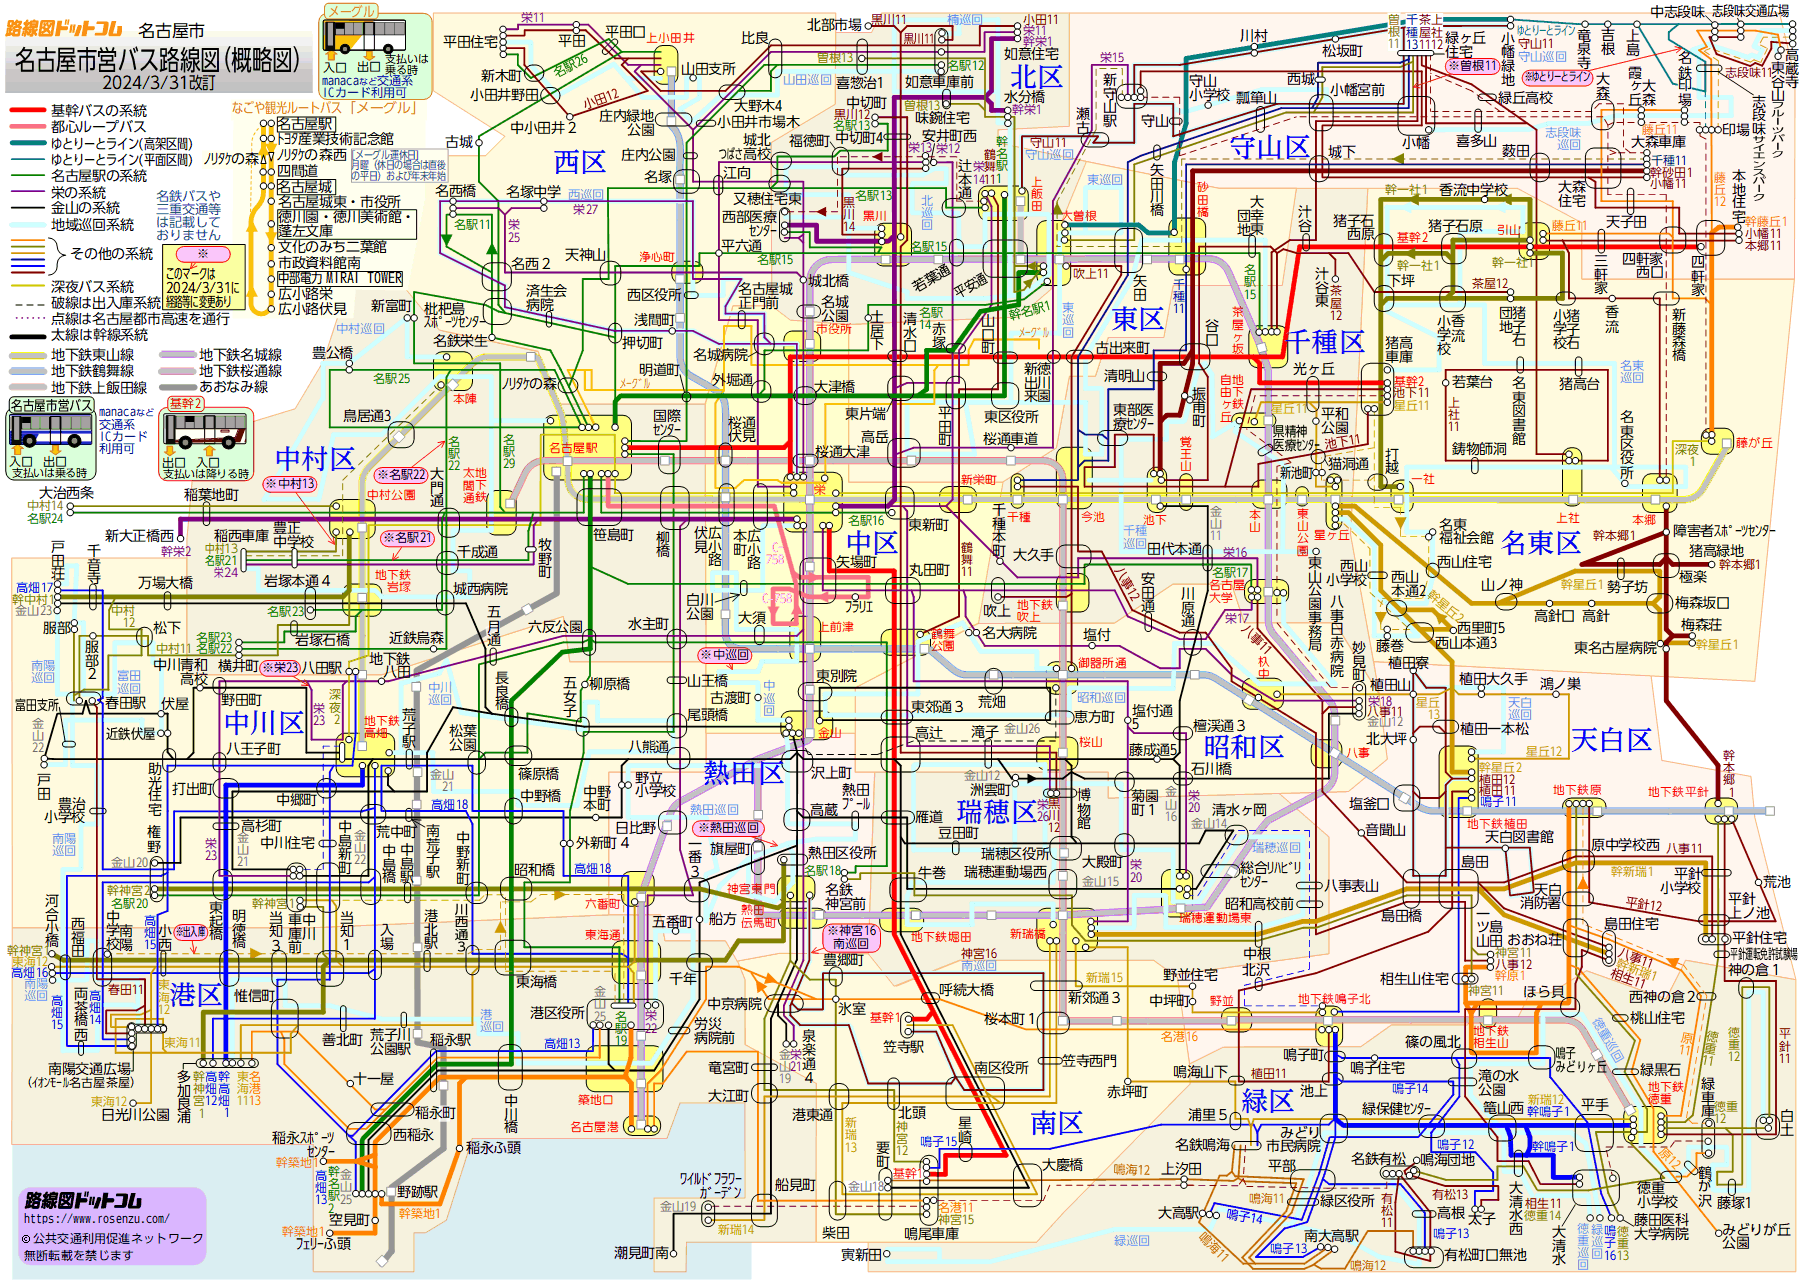 路線図ドットコム 名古屋市 名古屋市営バス路線図 概略図